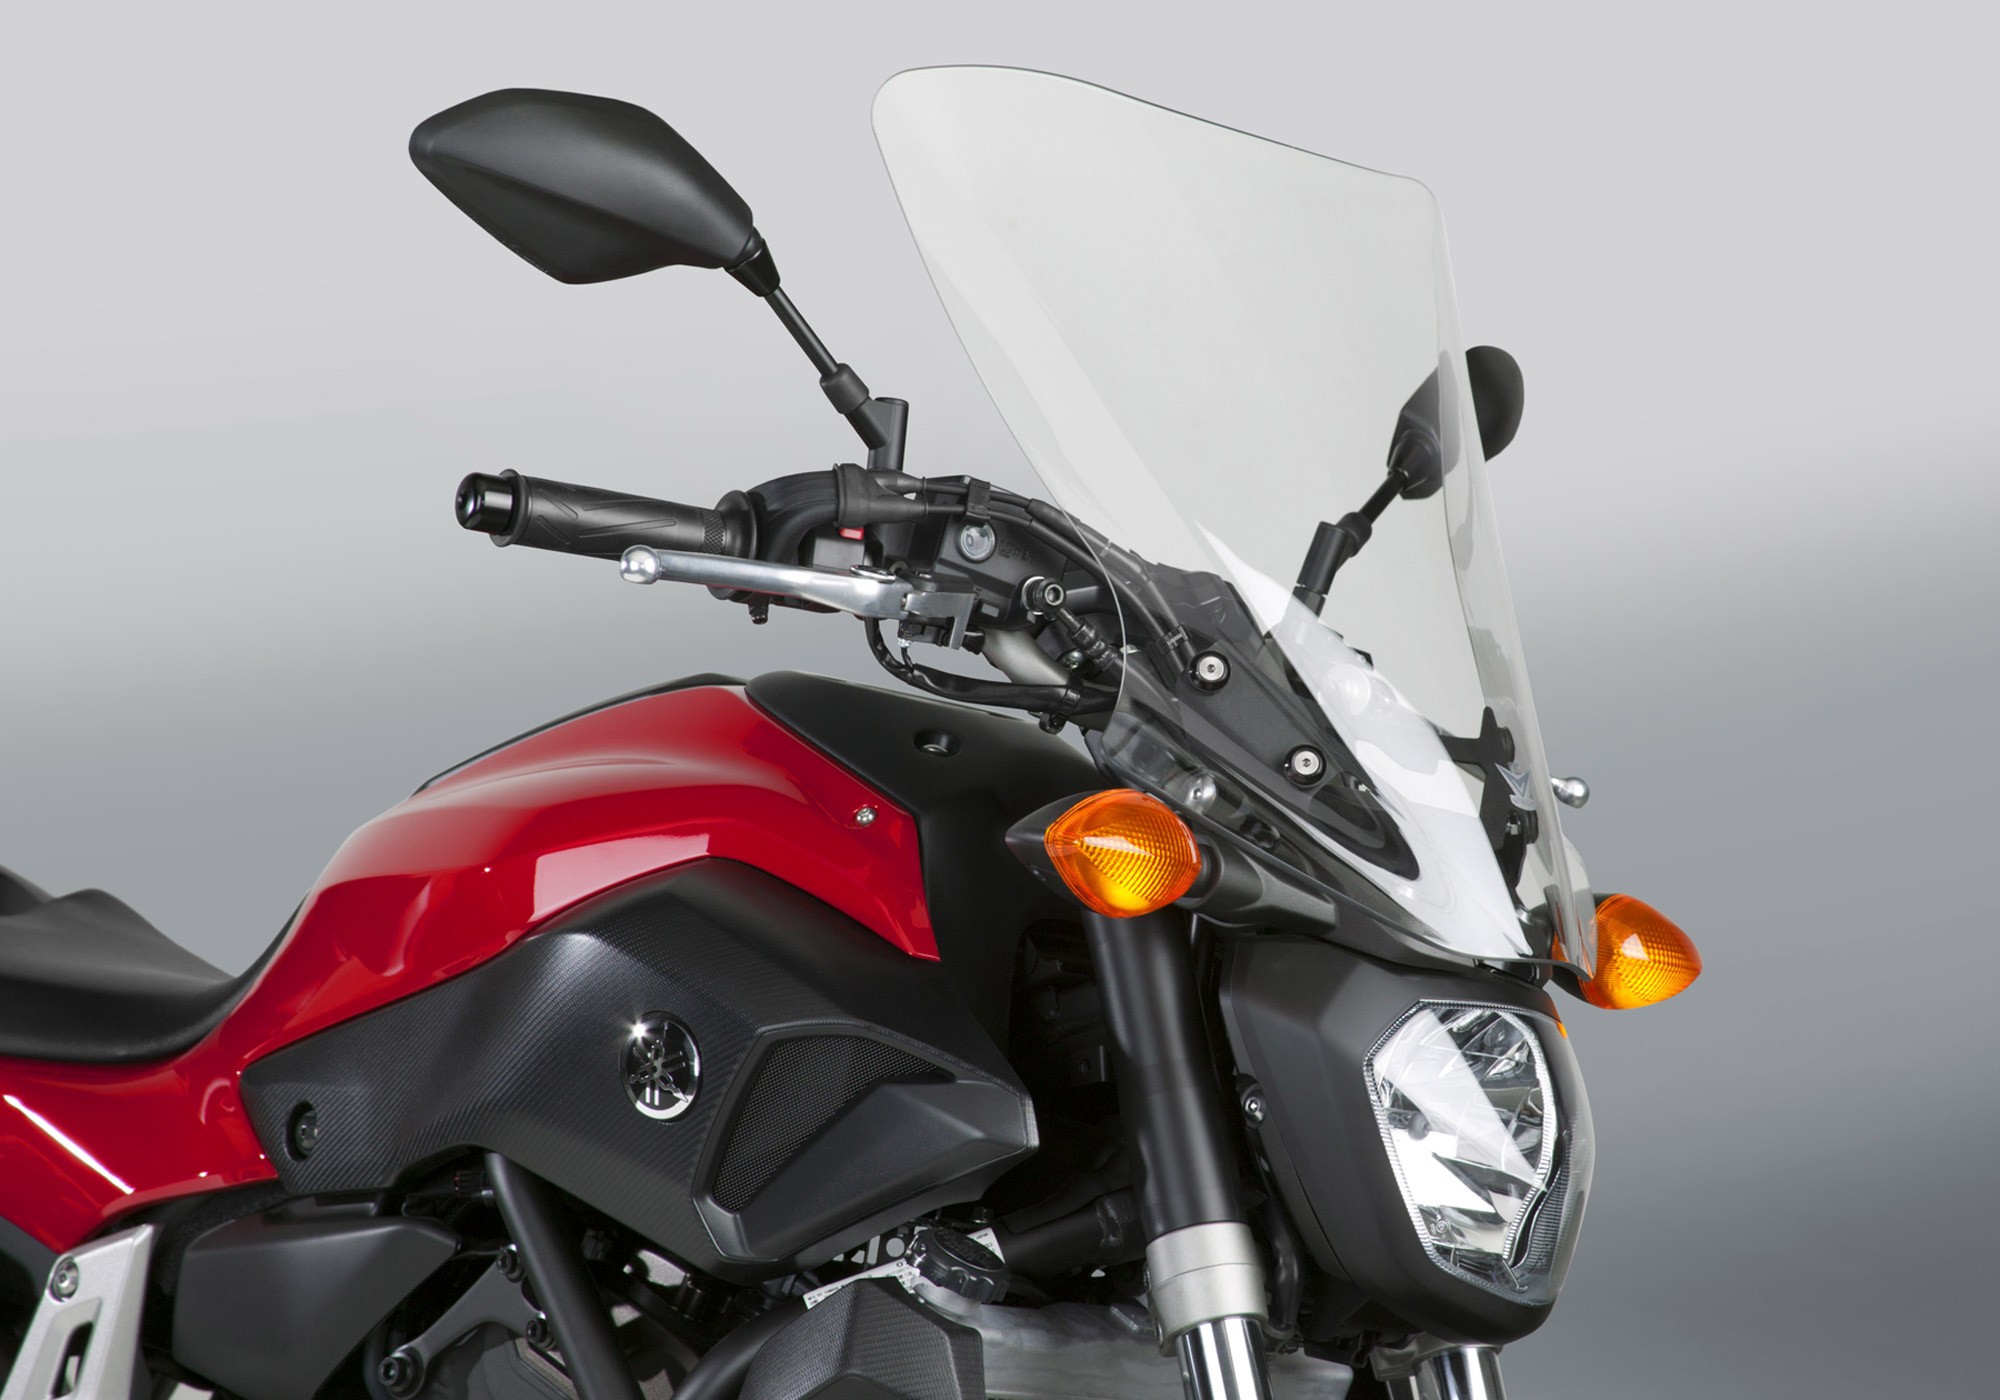 NATIONAL CYCLE Motorradscheibe VStream klar ABE passt für Yamaha MT-07